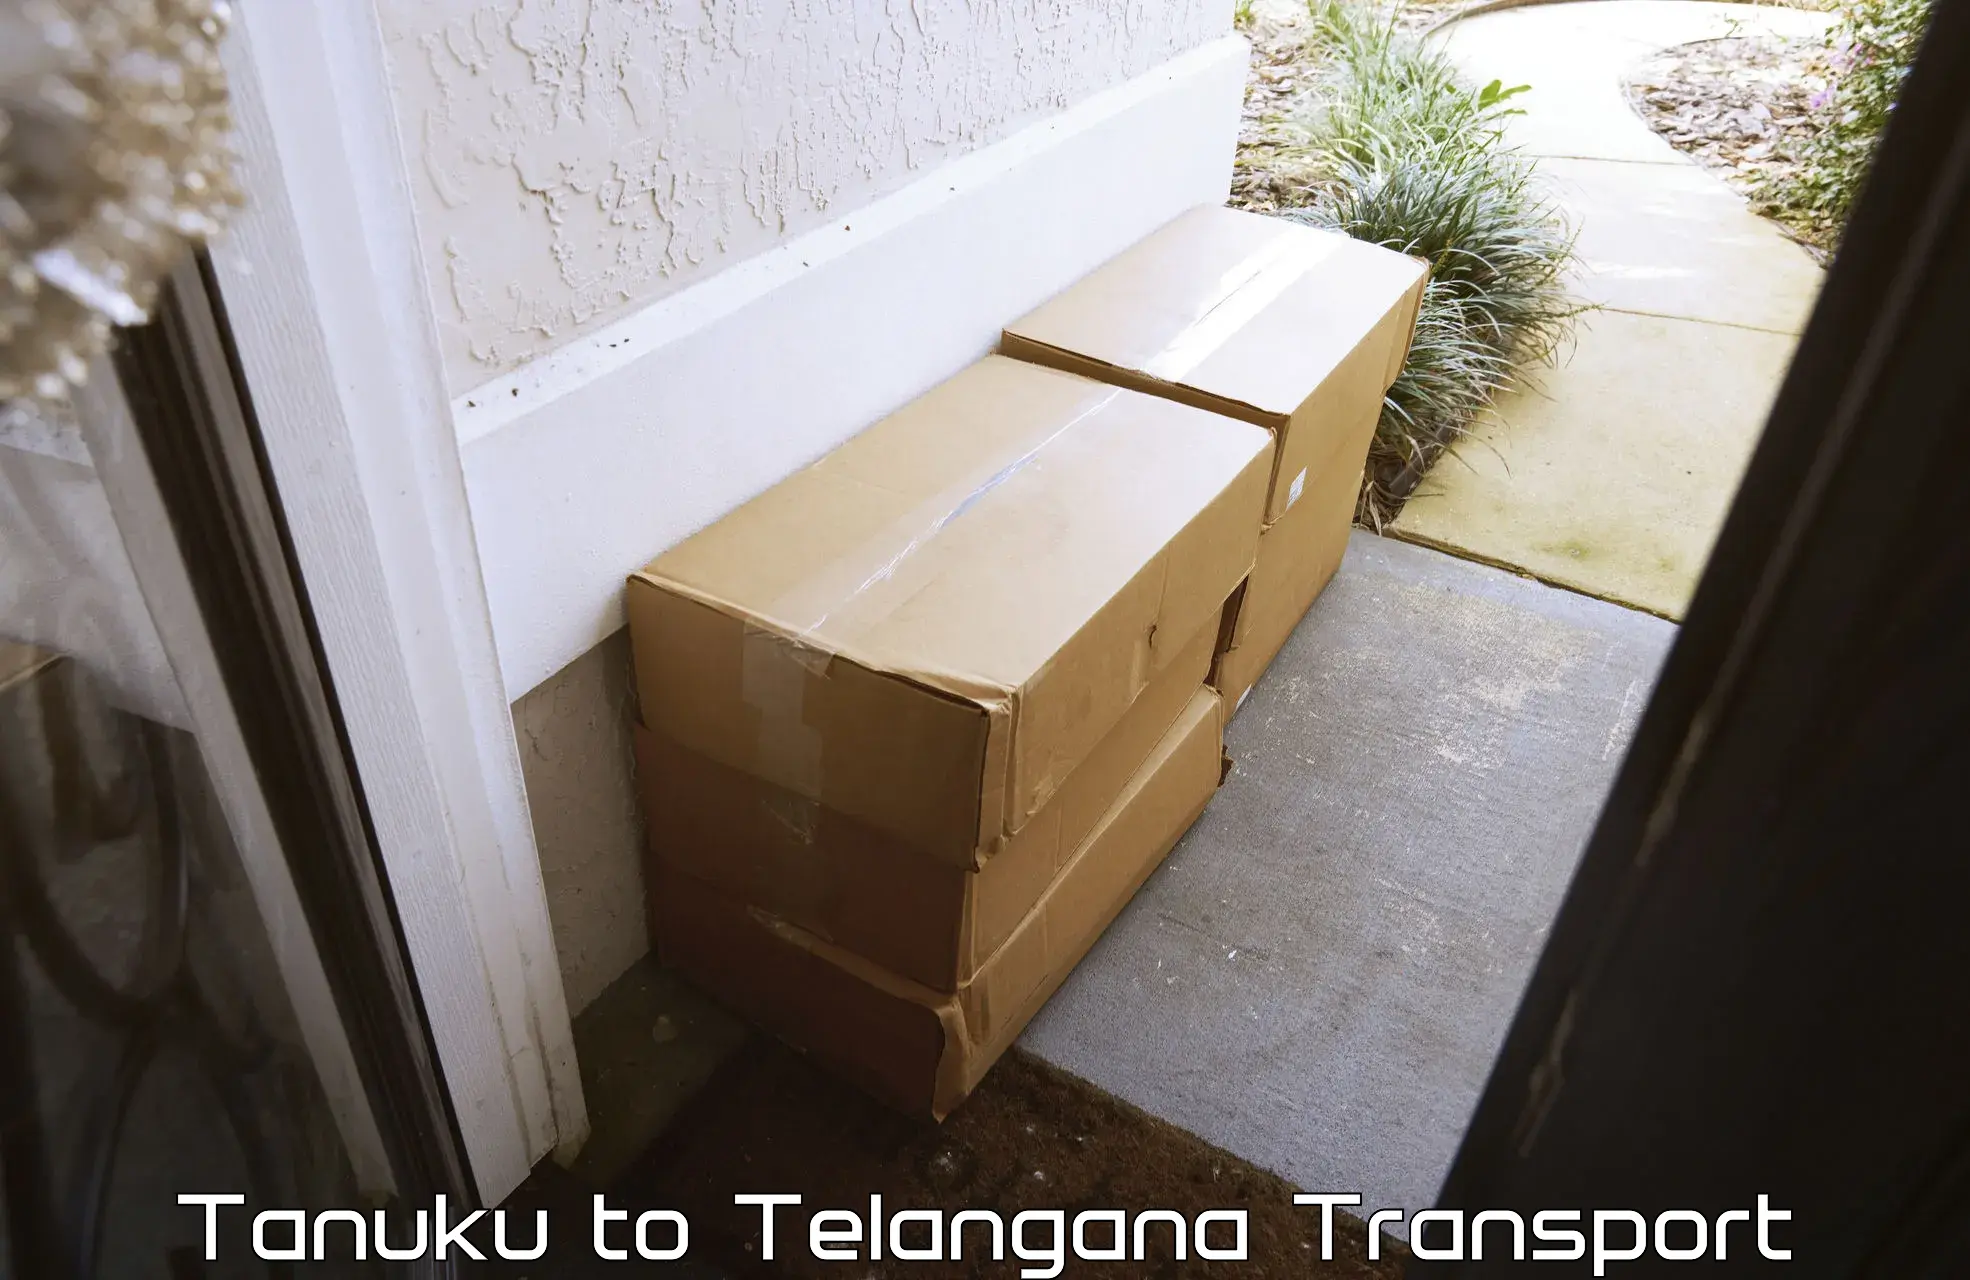 Shipping partner Tanuku to Nirmal